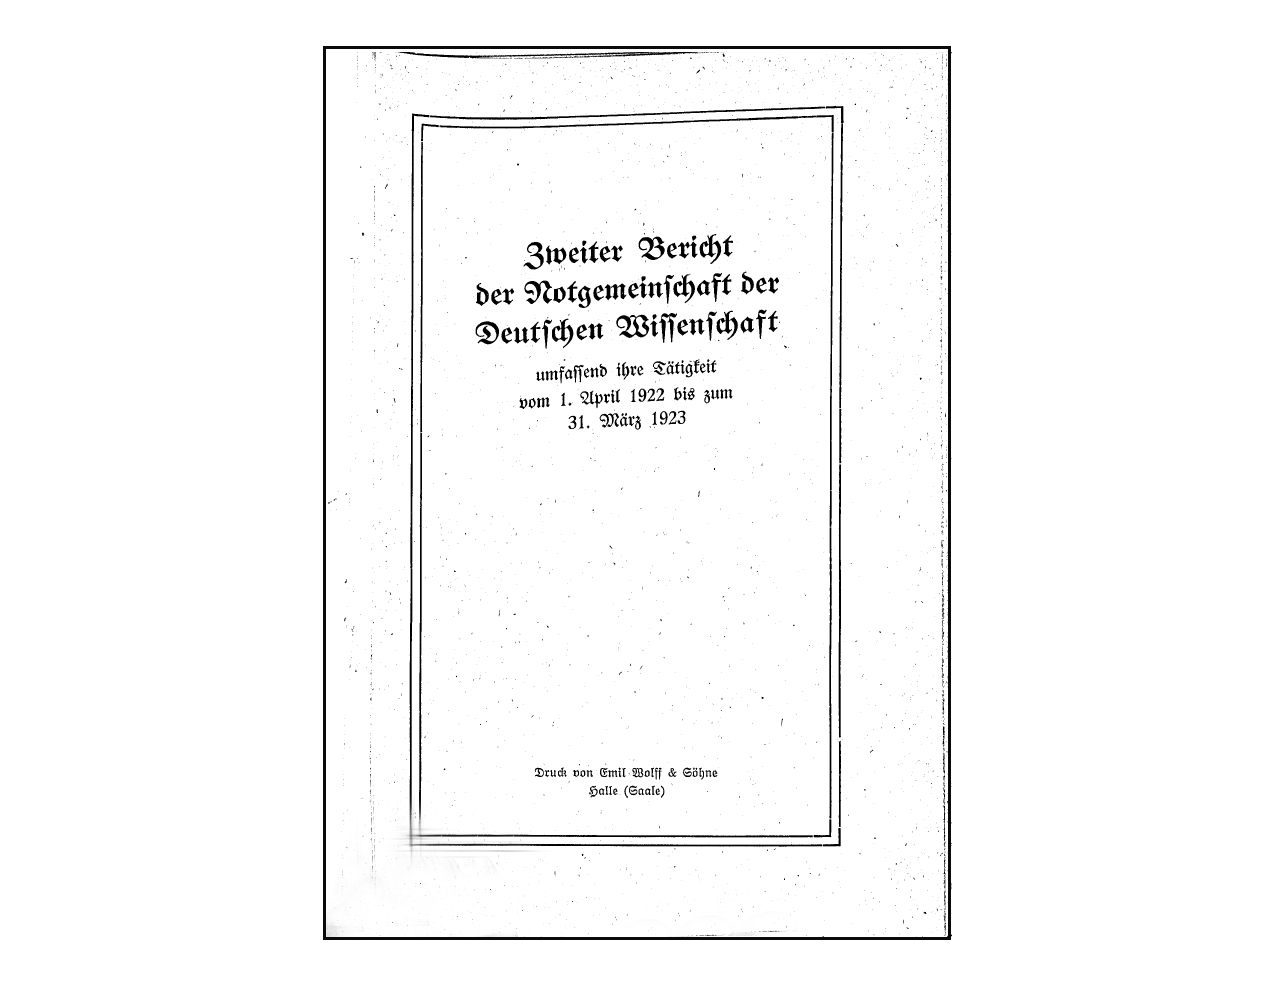 Zweiter Bericht der Notgemeinschaft, 1923